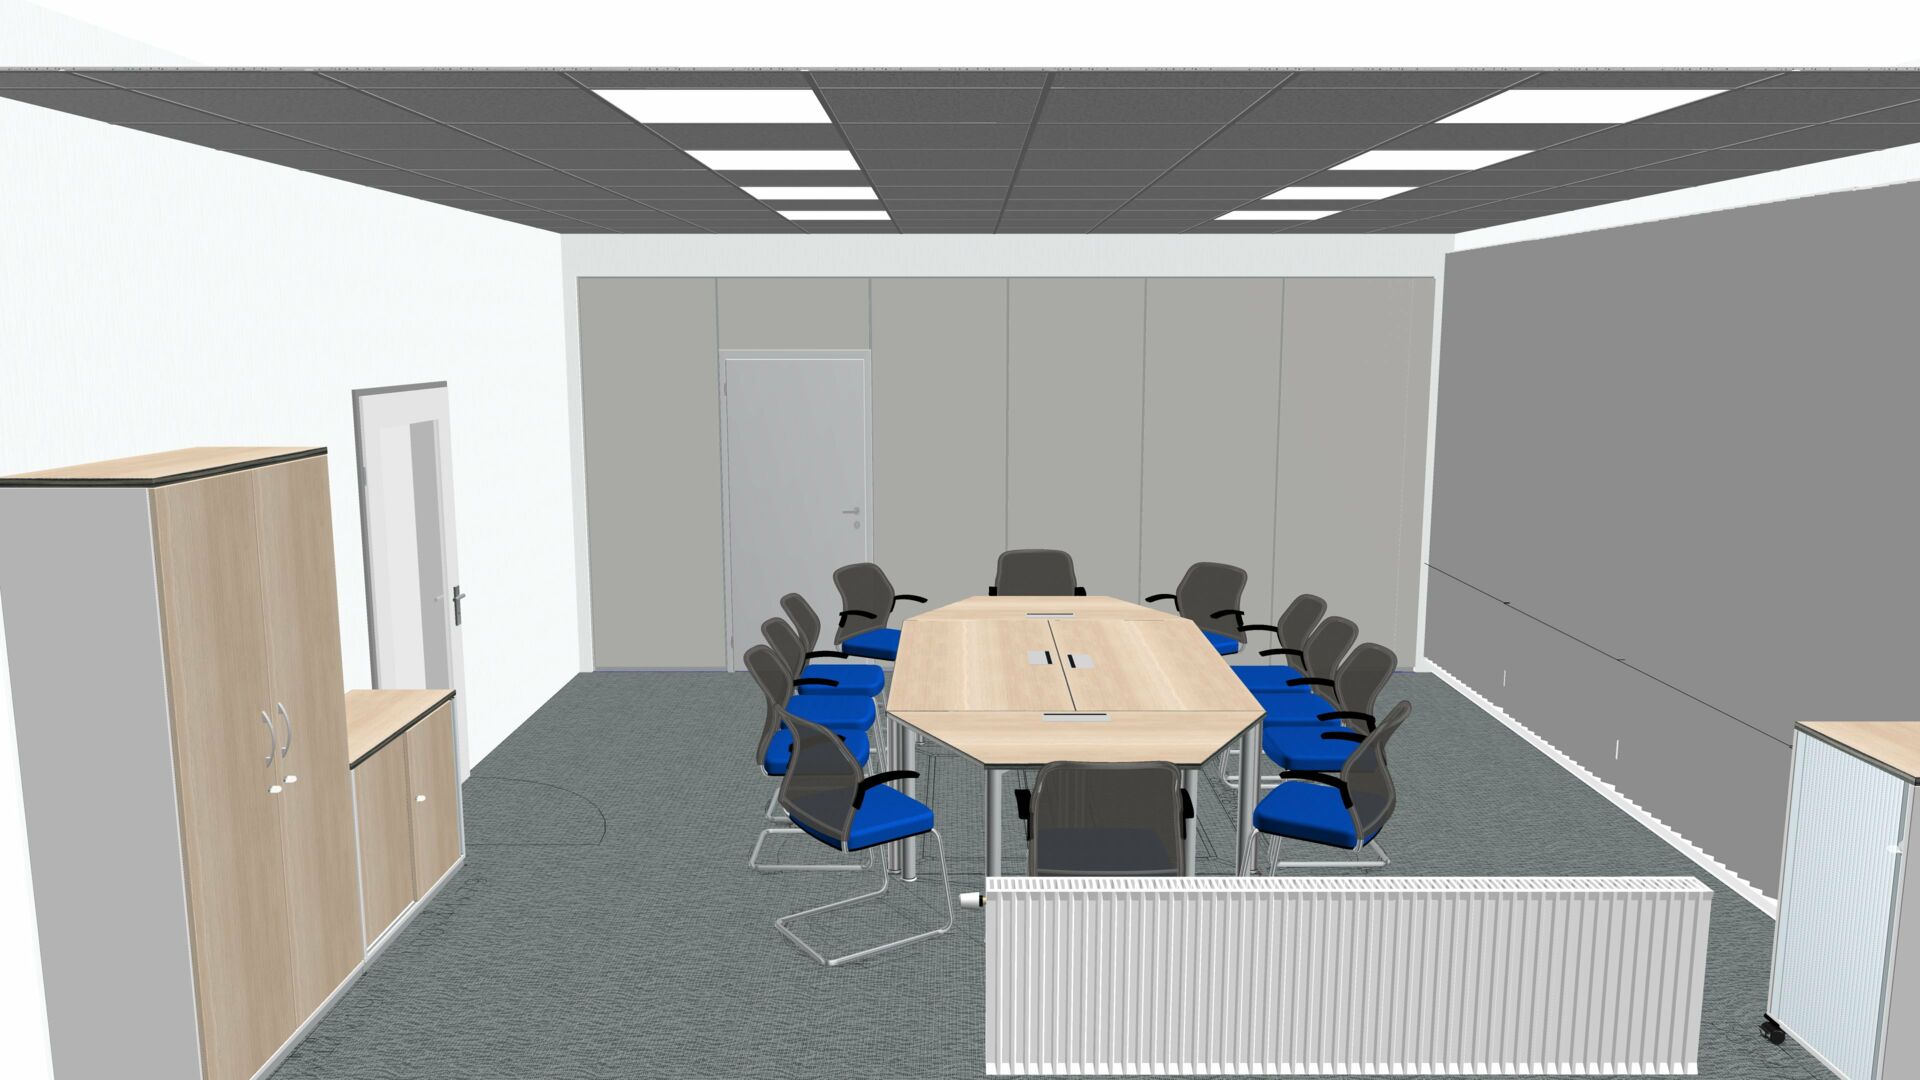 3D Planung für Objekteinrichtung im Konferenz- & Meetingraum - 03